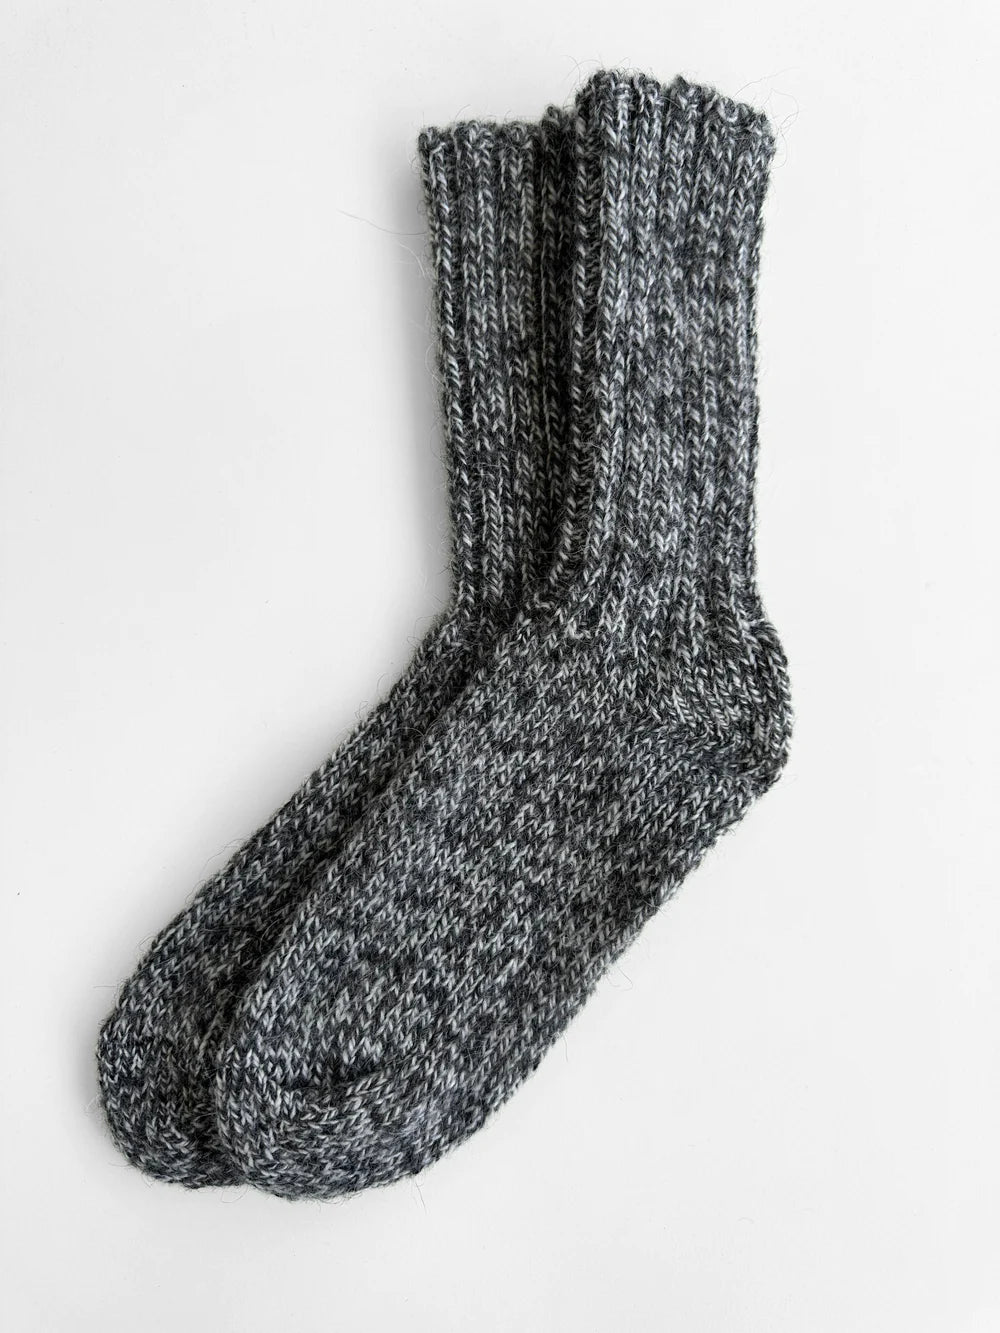 Traditional Icelandic Wool Socks - Ragg wool socks